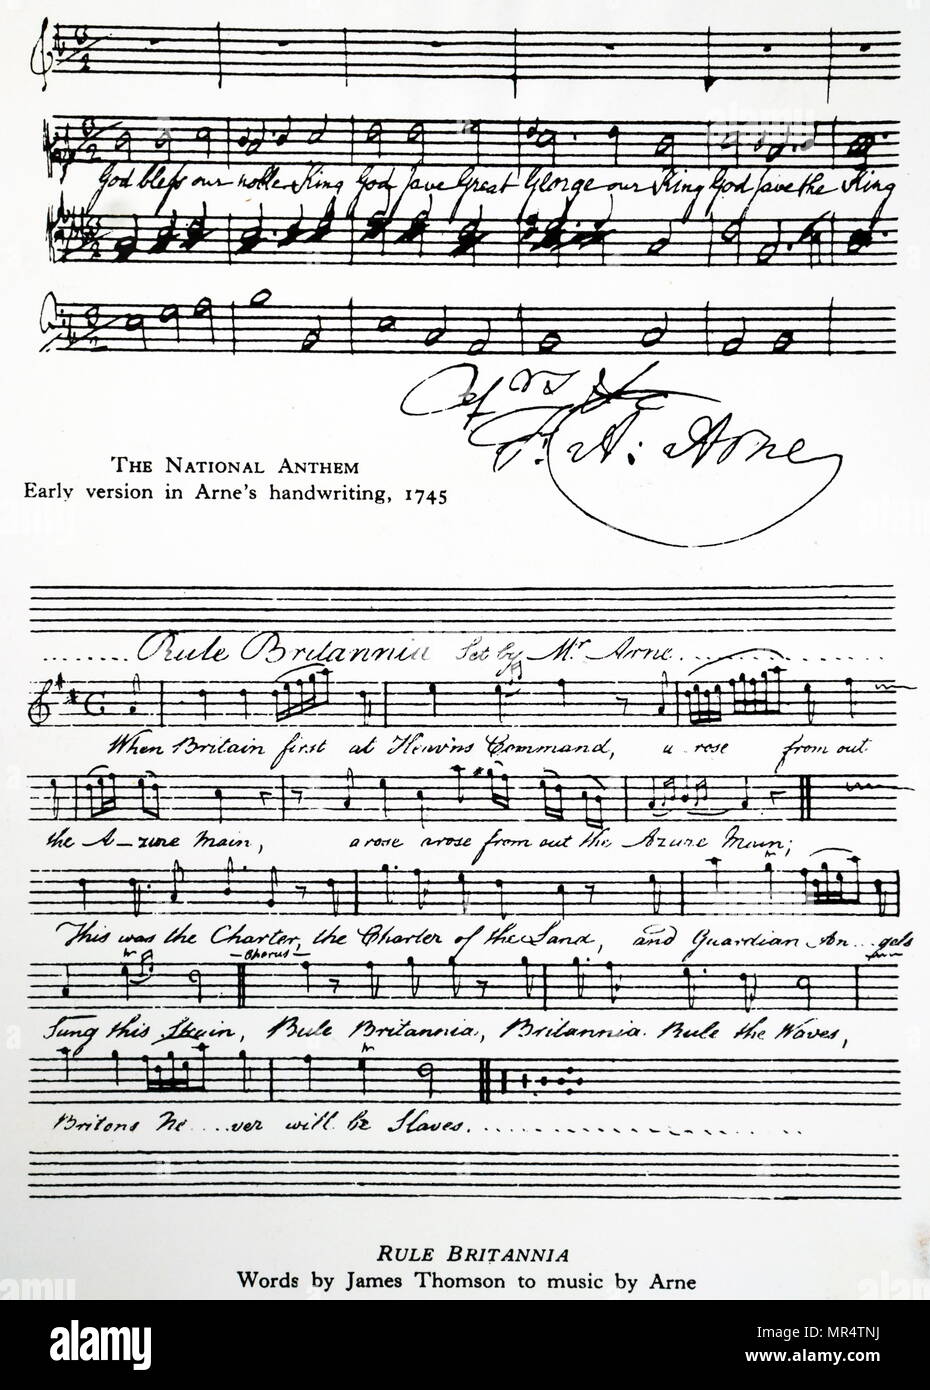 Partituras para el Himno Nacional Británico y el imperio Britannia compuesto por Thomas Arne. Thomas Arne (1710-1778), un compositor inglés. Fecha del siglo xviii Foto de stock